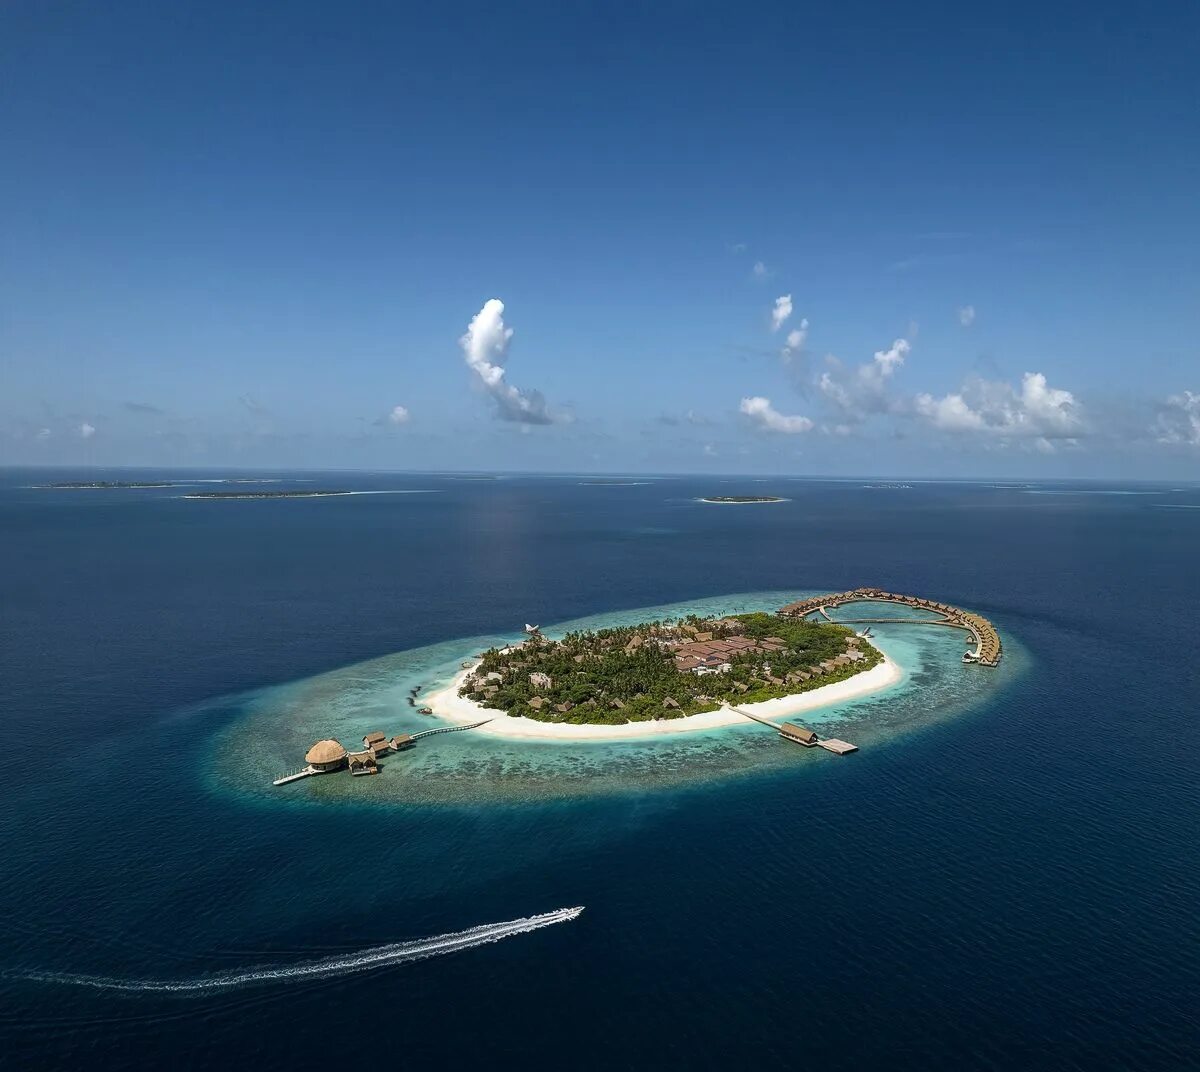 Joali being. Мальдивы Joali Maldives. Атолл Раа Мальдивы. Джоали беинг Мальдивы. Bodufushi Island Мальдивы.